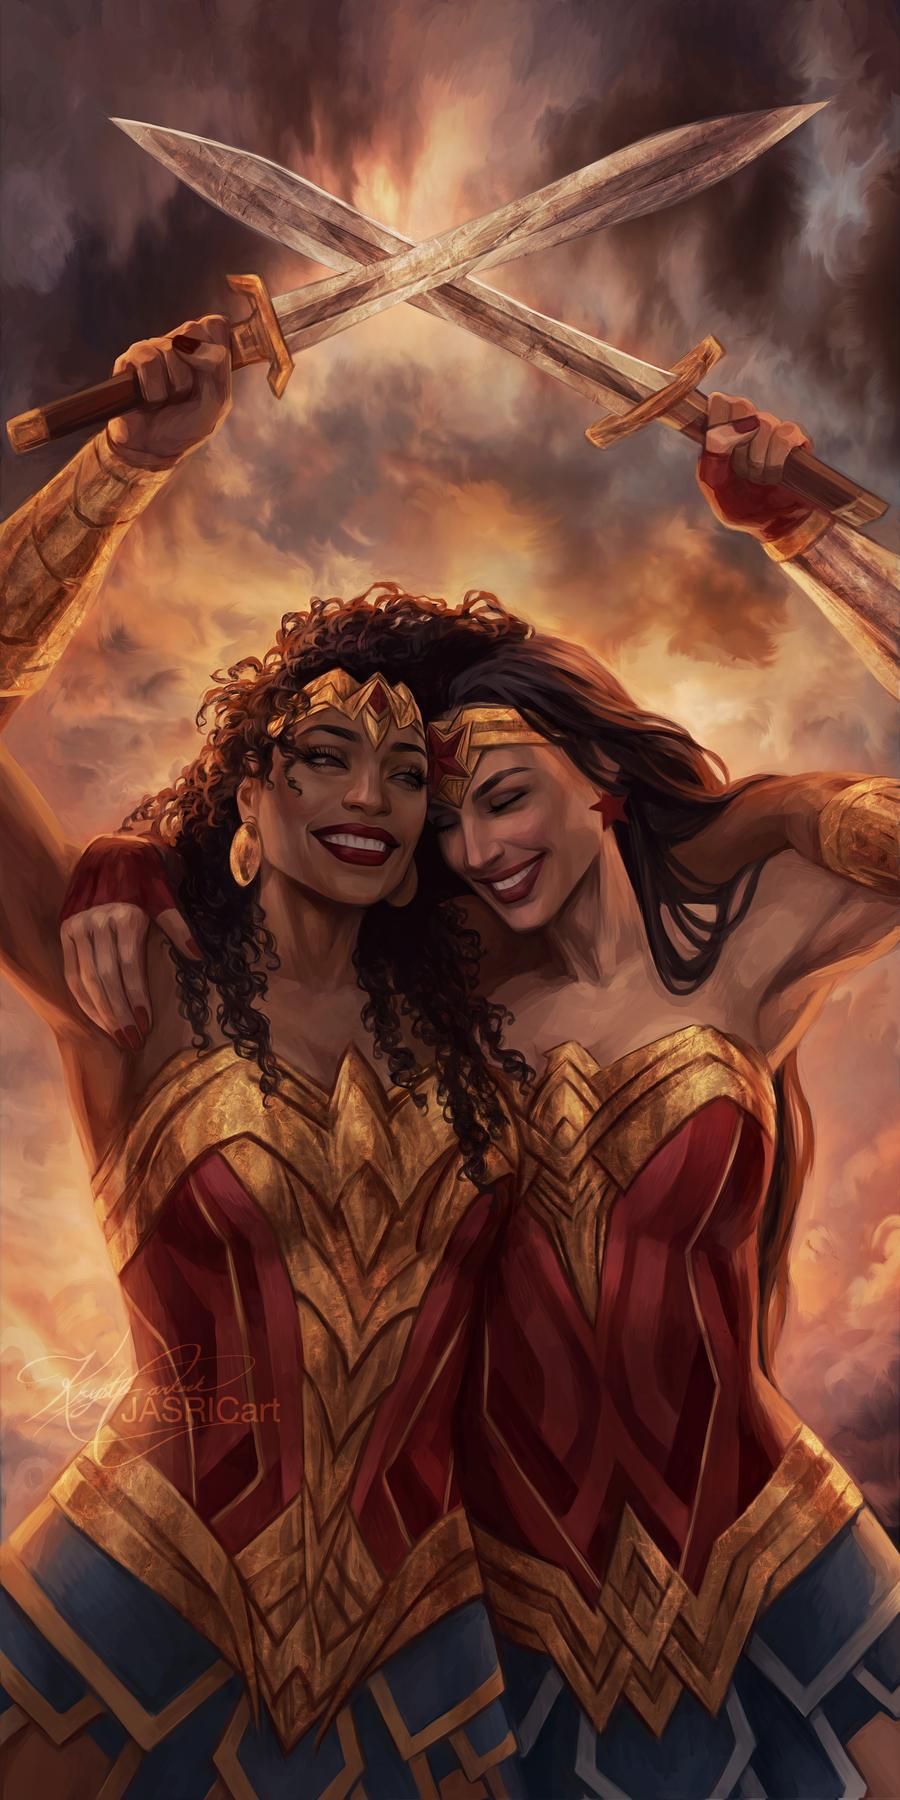 Wonder Woman & Her Sister Share The Love in Breathtaking Fan Art